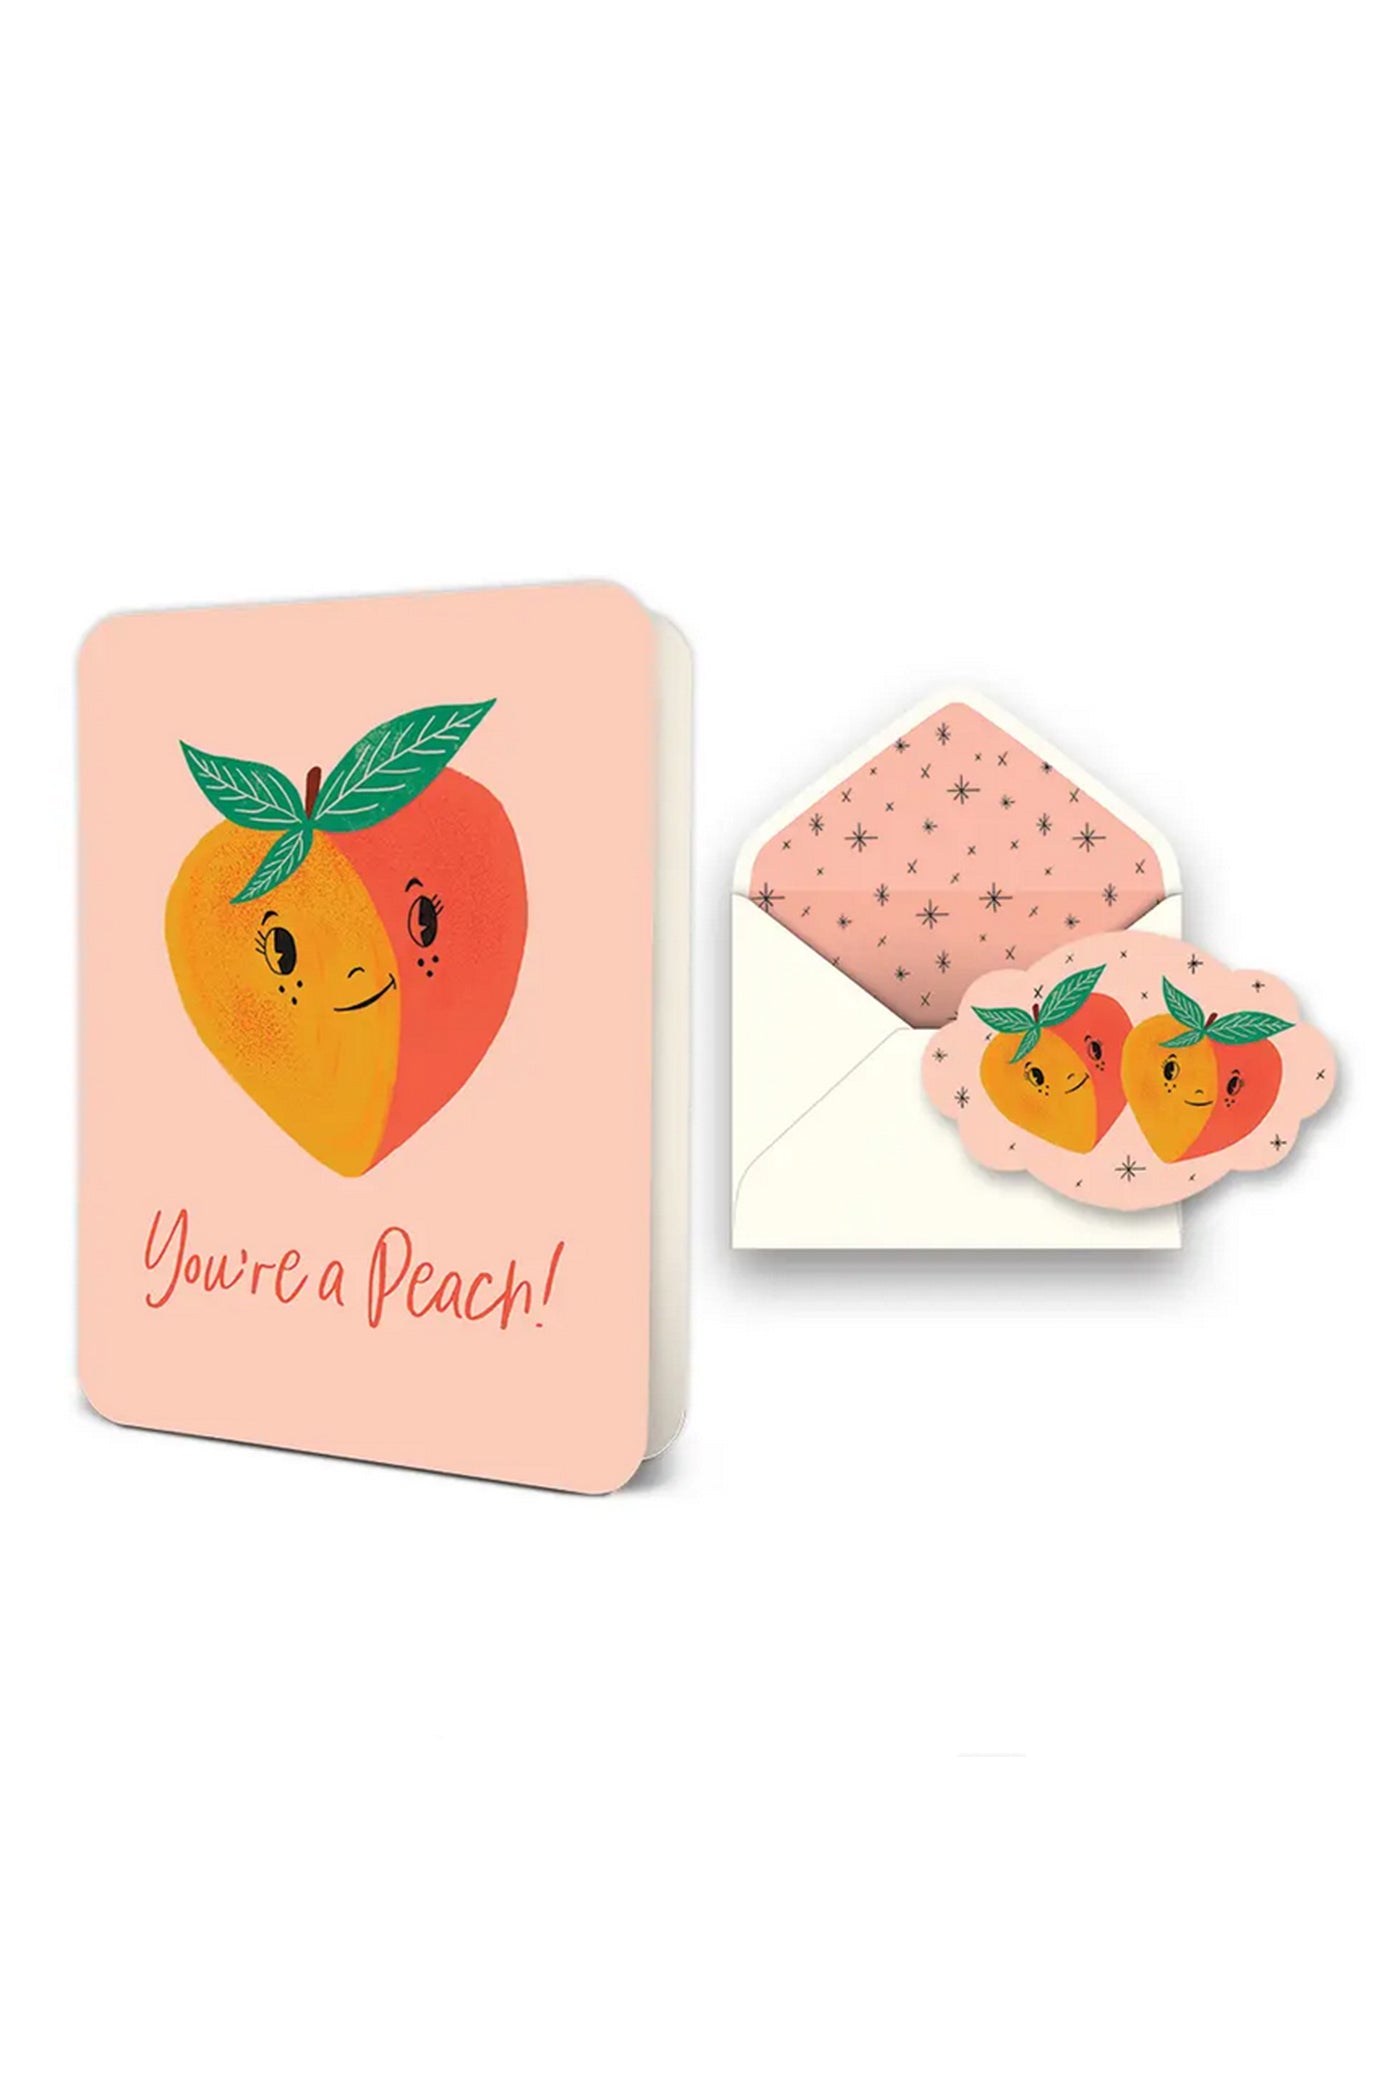 You're A Peach! Greeting Card